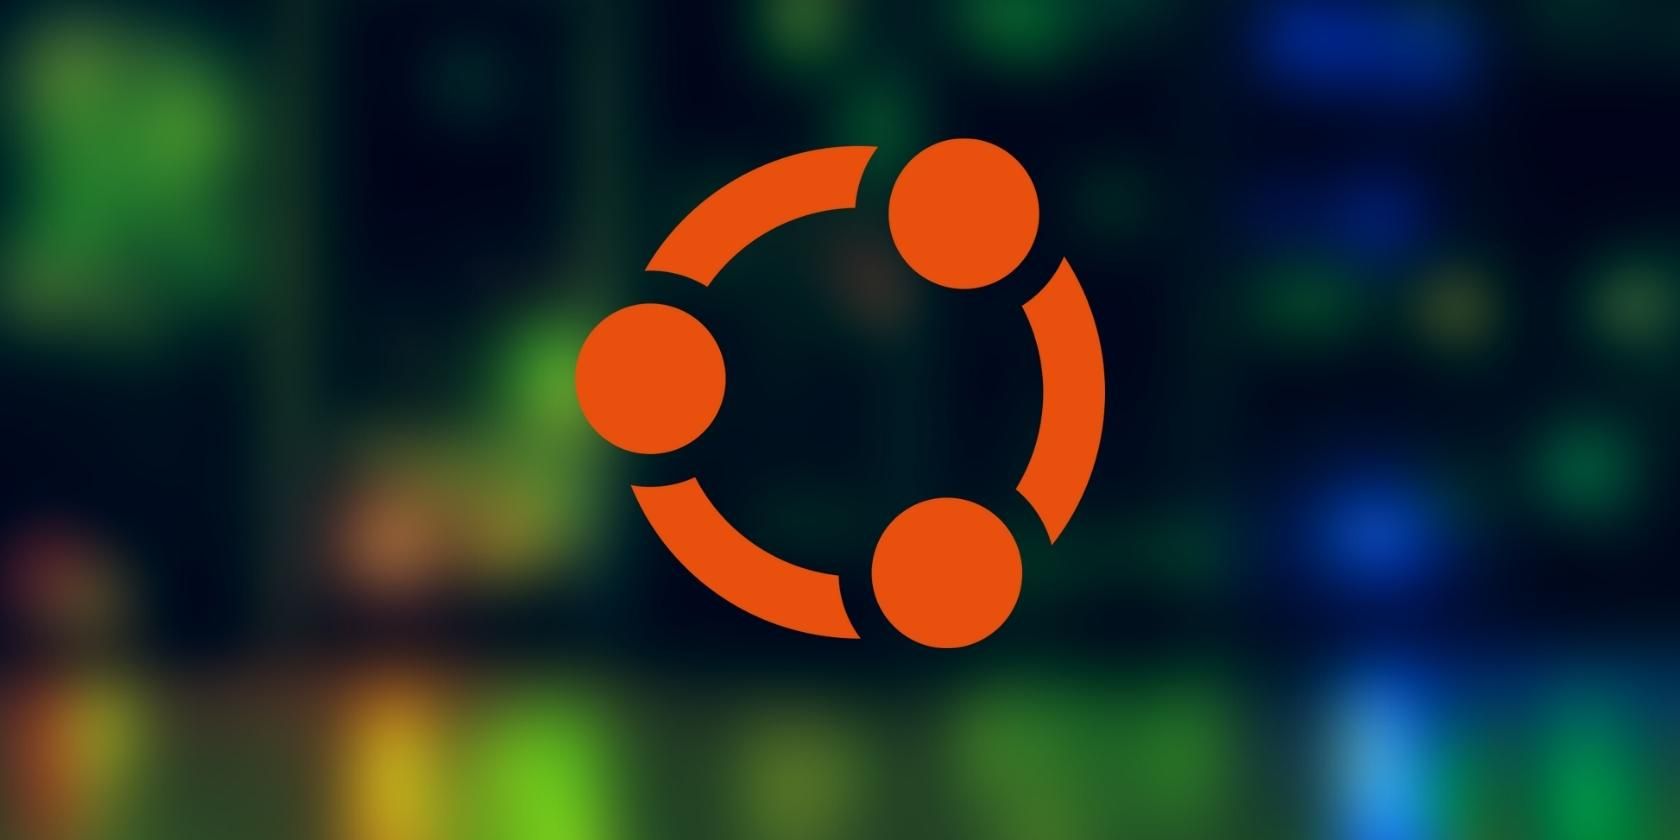 ubuntu logo with a background